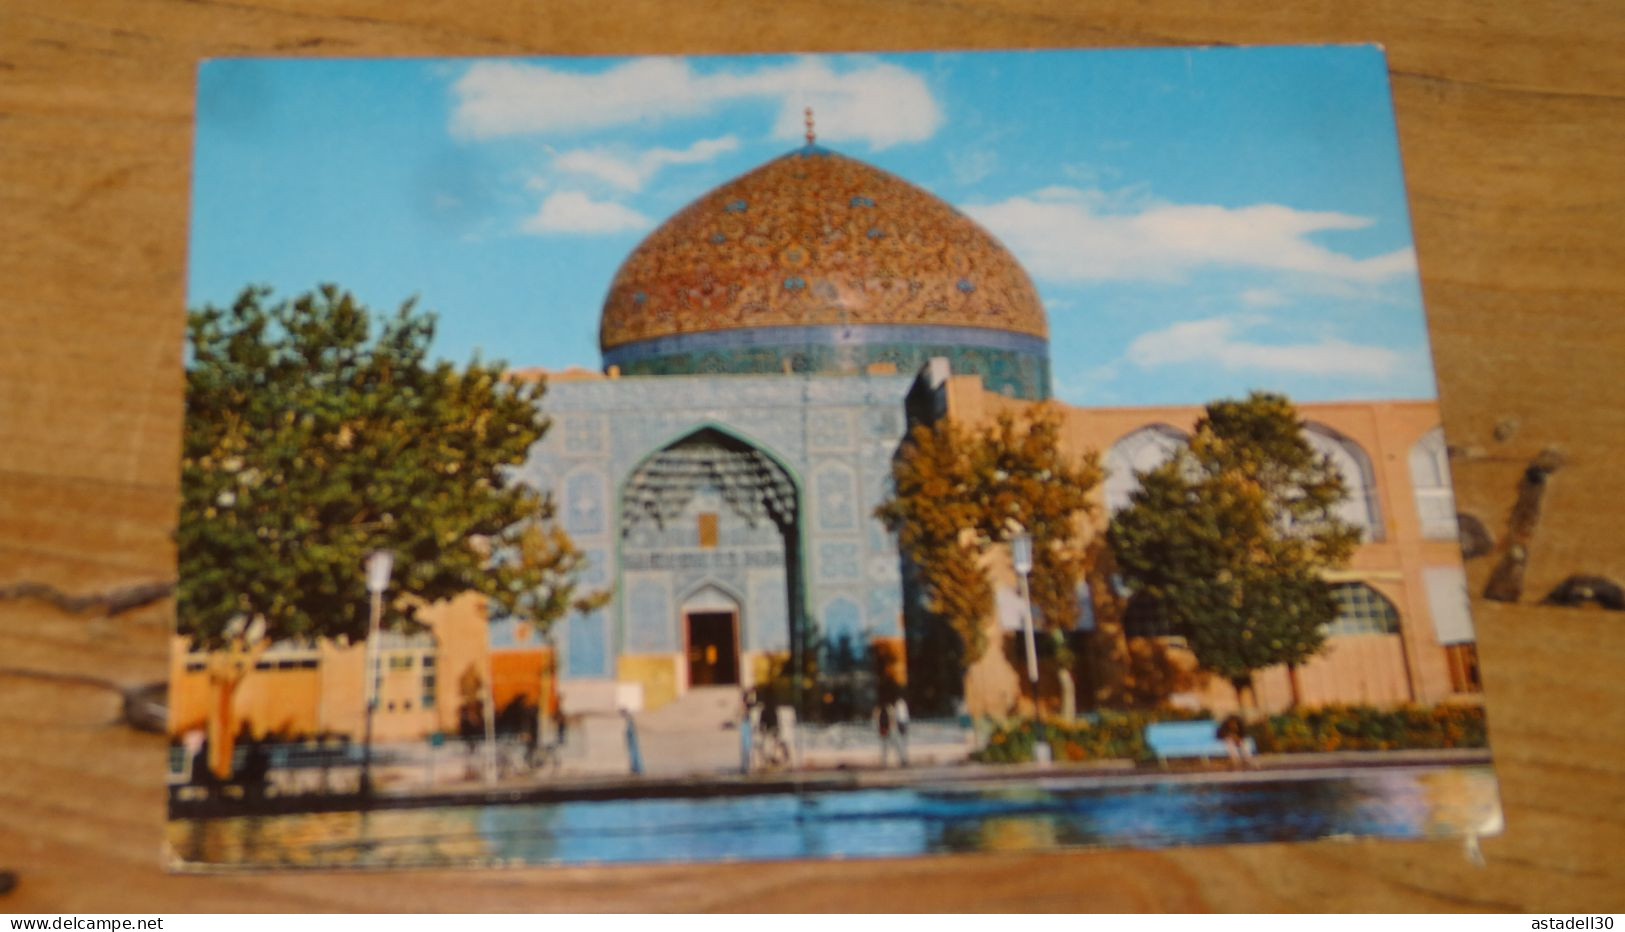 ISFAHAN Sheikh Lotfollah Mosque  ........... PHI ....... G-1434 - Irán